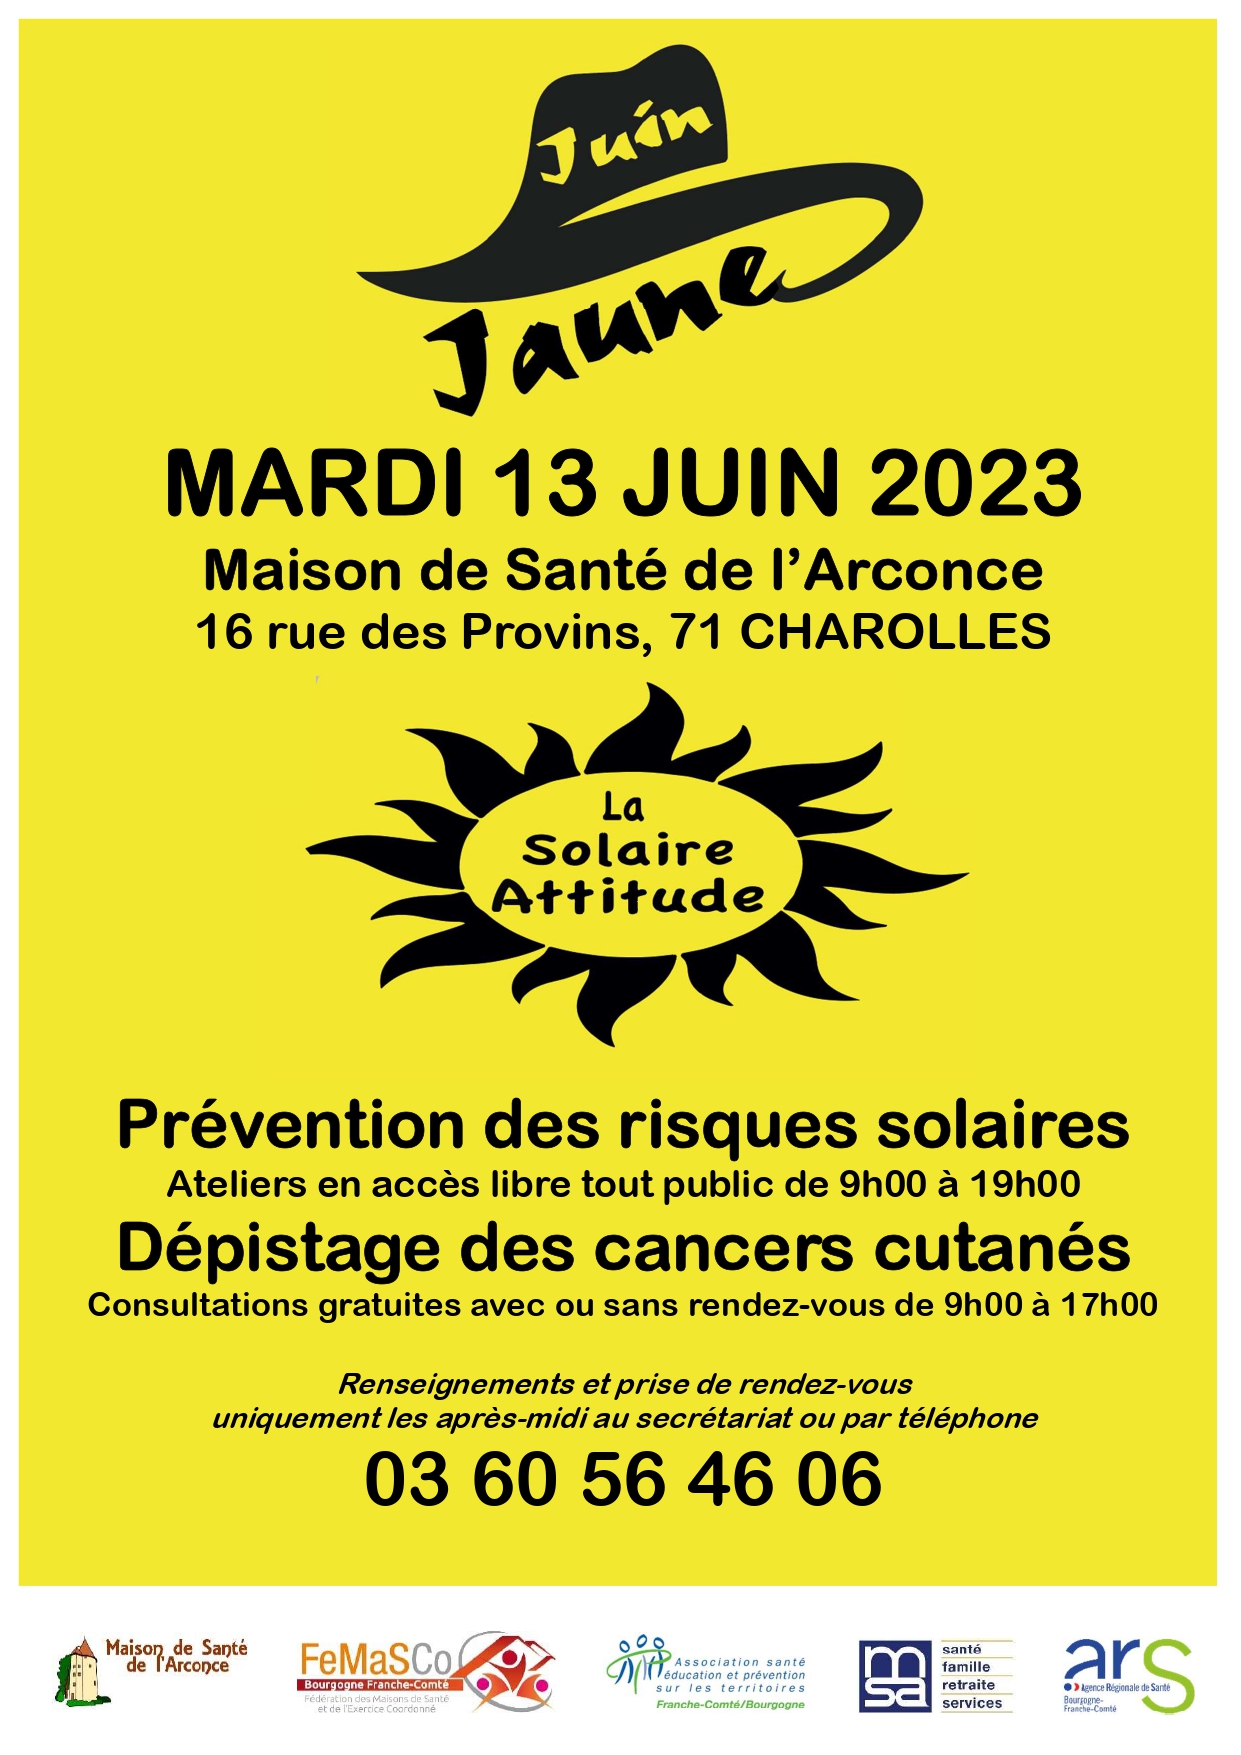 juin jaune depistage cancer maison santé de l'arconce ateliers gratuit